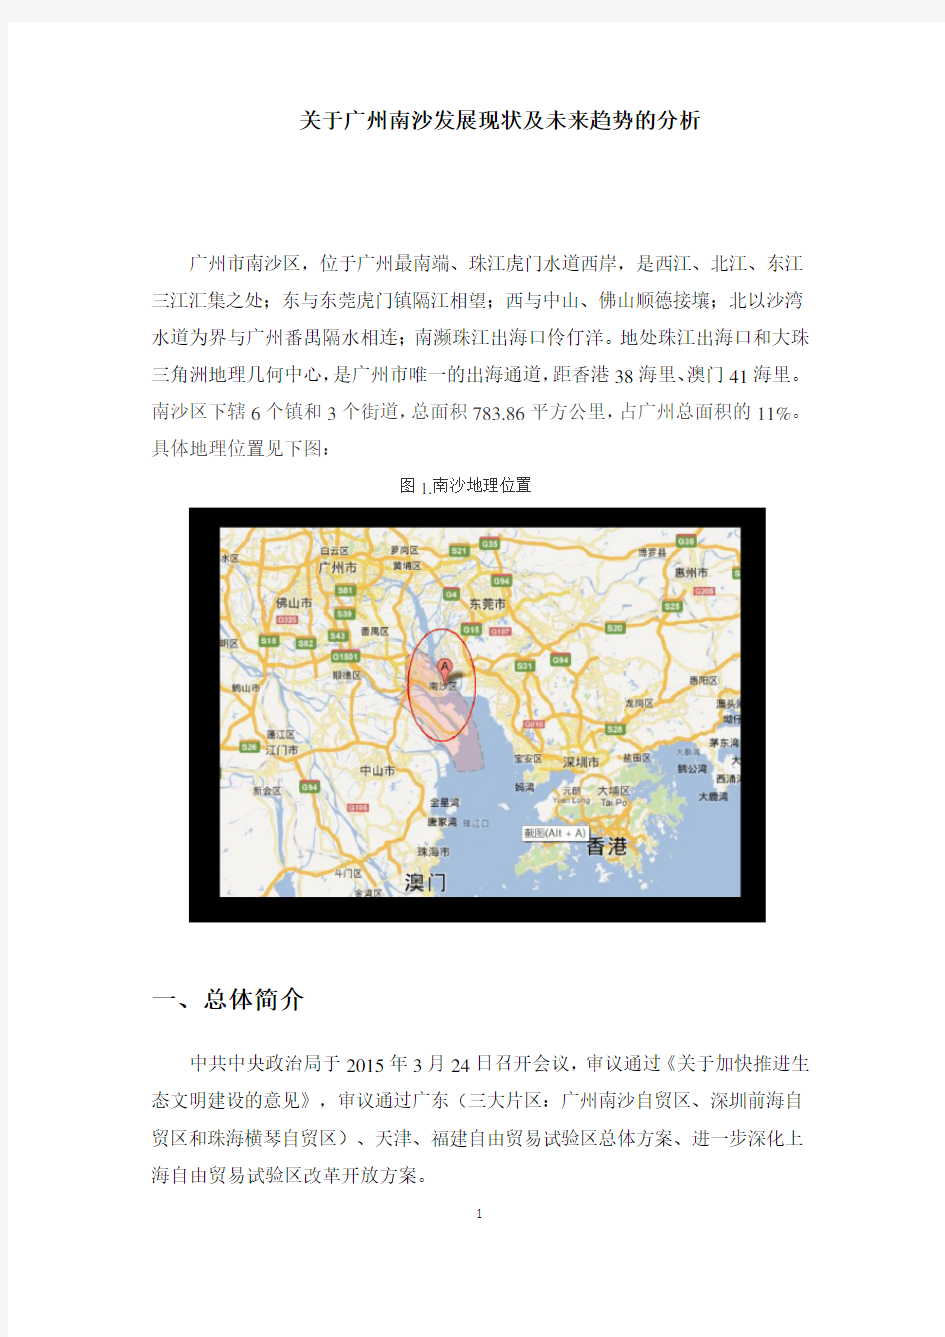 关于广州南沙发展现状和趋势的分析